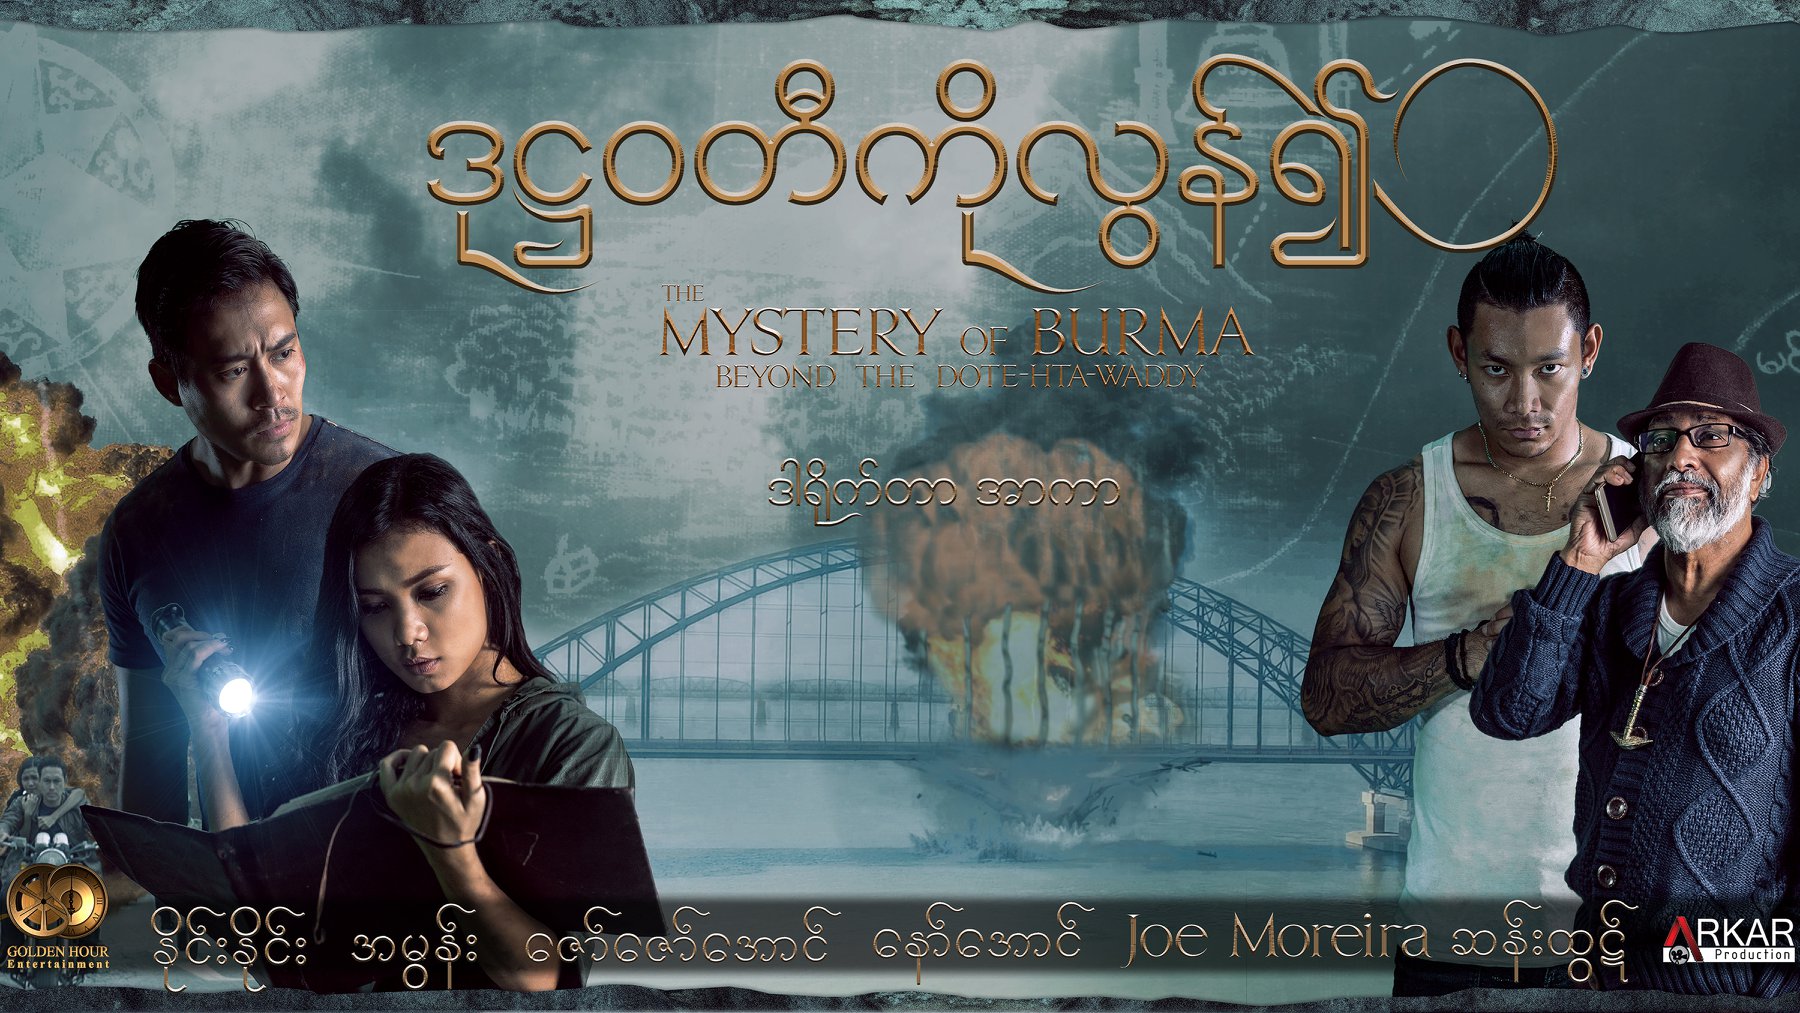 The Mystery of Burma ปริศนาแห่งแม่น้ำ โด๊ะ ทะ วะดี